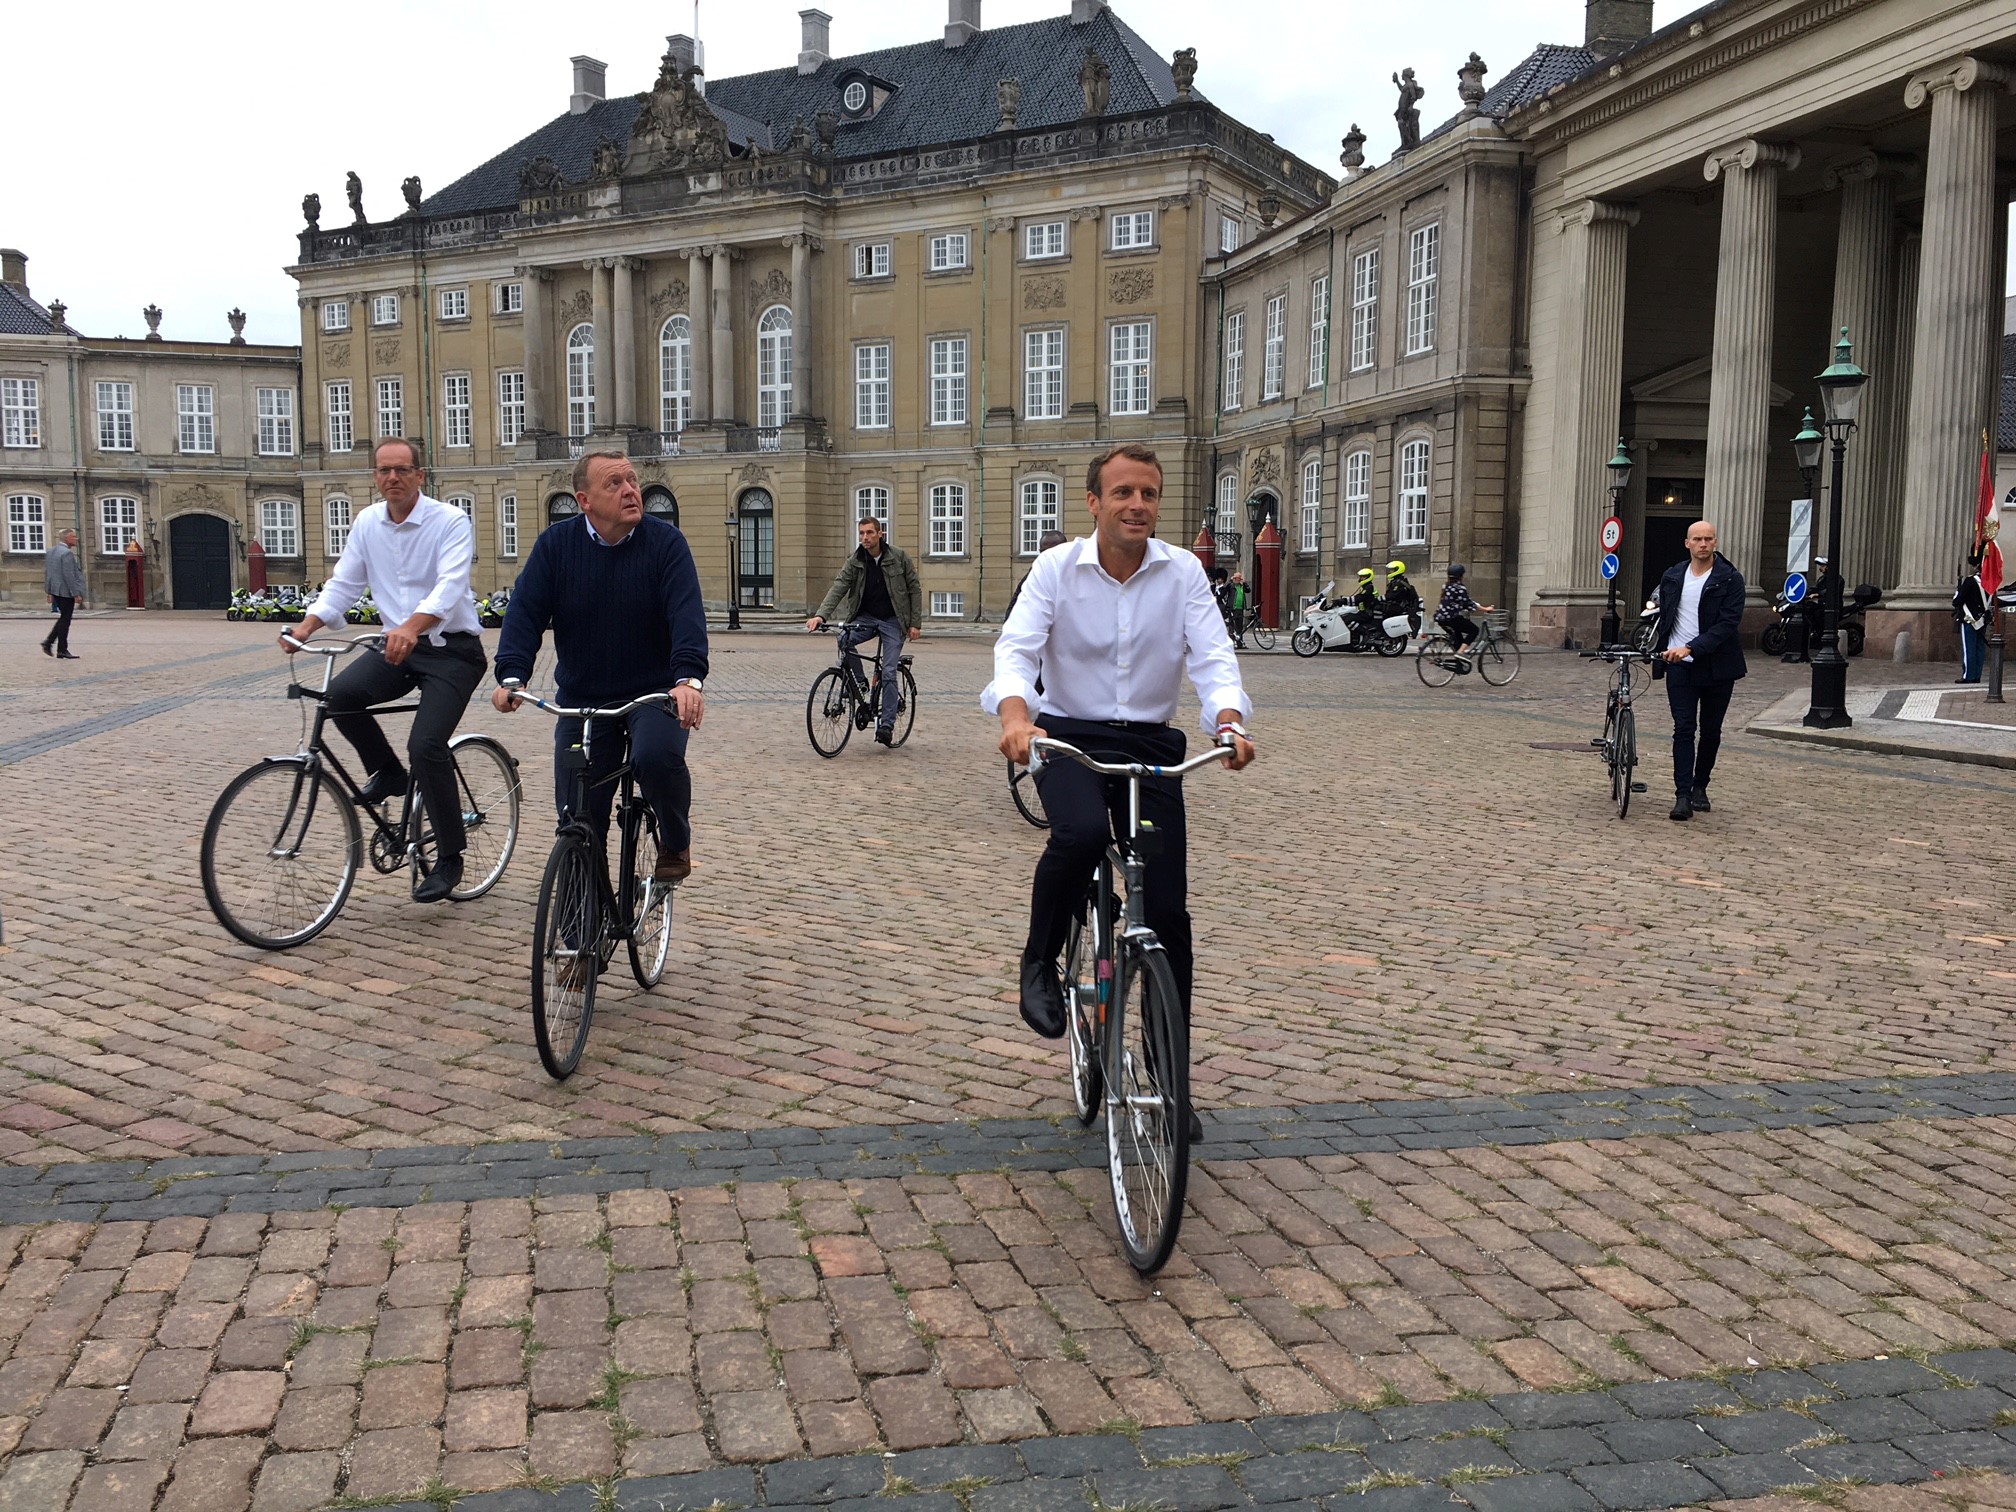 ماكرون يتجول بالدراجة مع رئيس وزراء الدنمارك